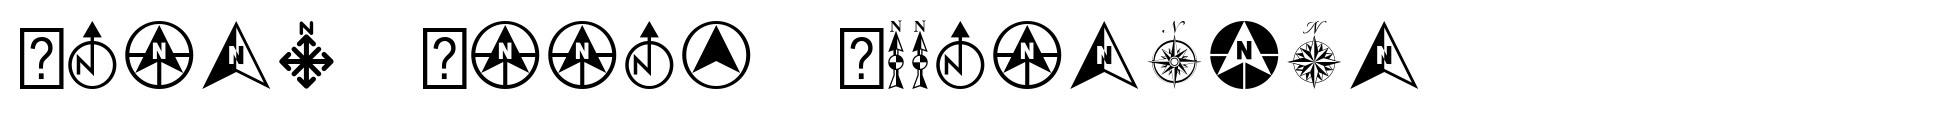 North Arrow Assortment